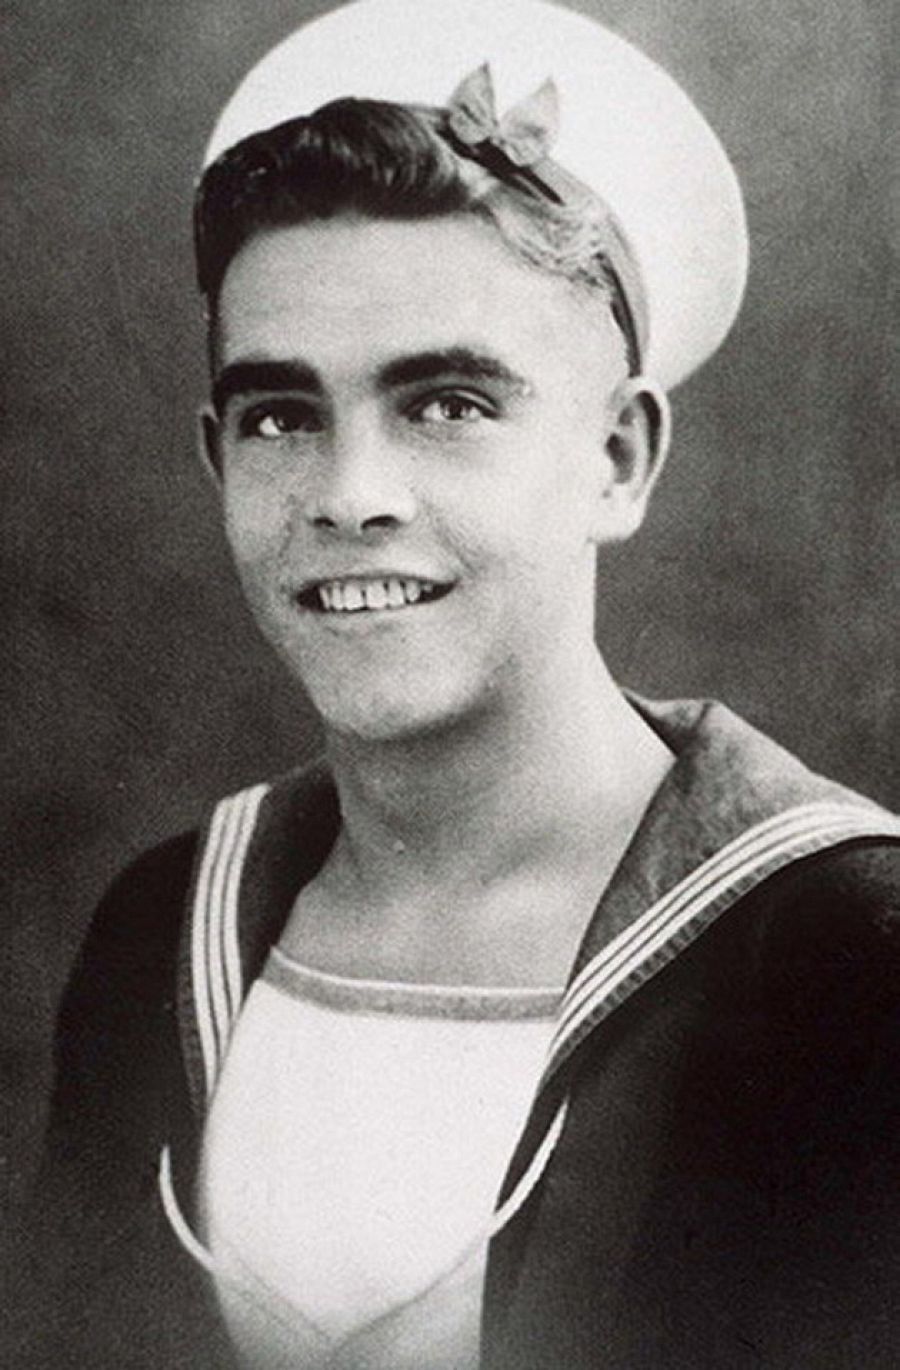  Sean Connery en la Royal Navy